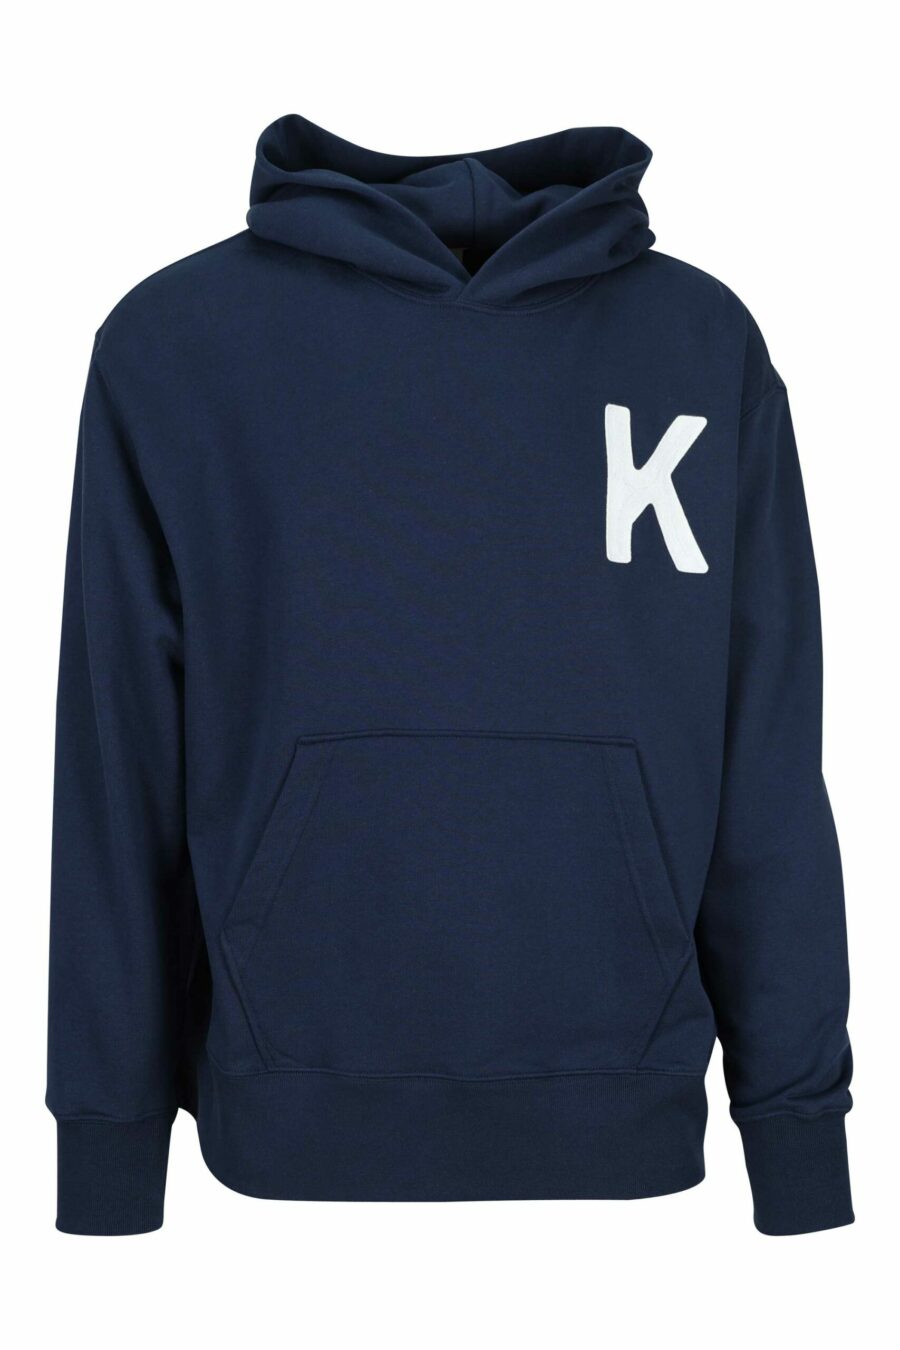 Dunkelblaues Kapuzensweatshirt mit Maxilogo "k" - 3612230630017 skaliert